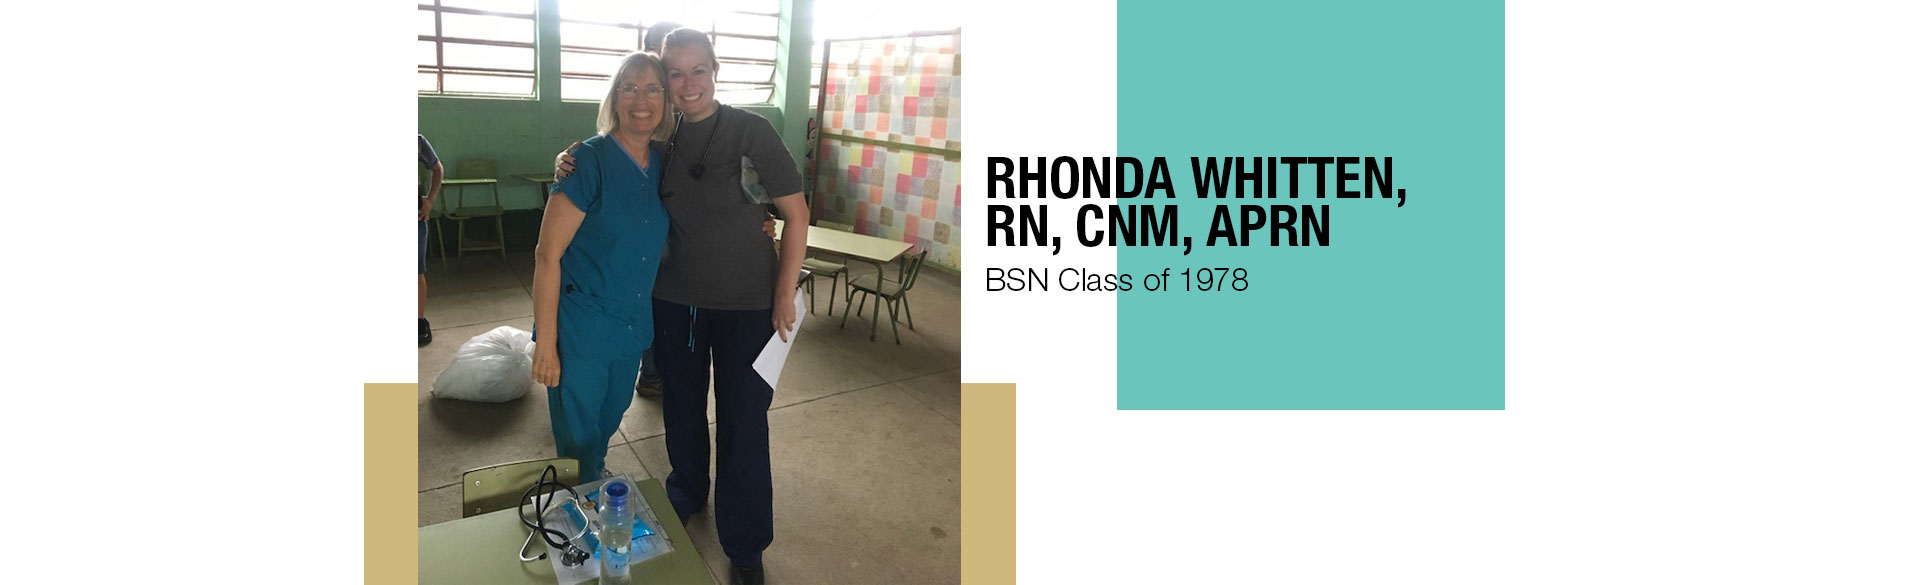 Rhonda Whitten, BSN Class of 1978